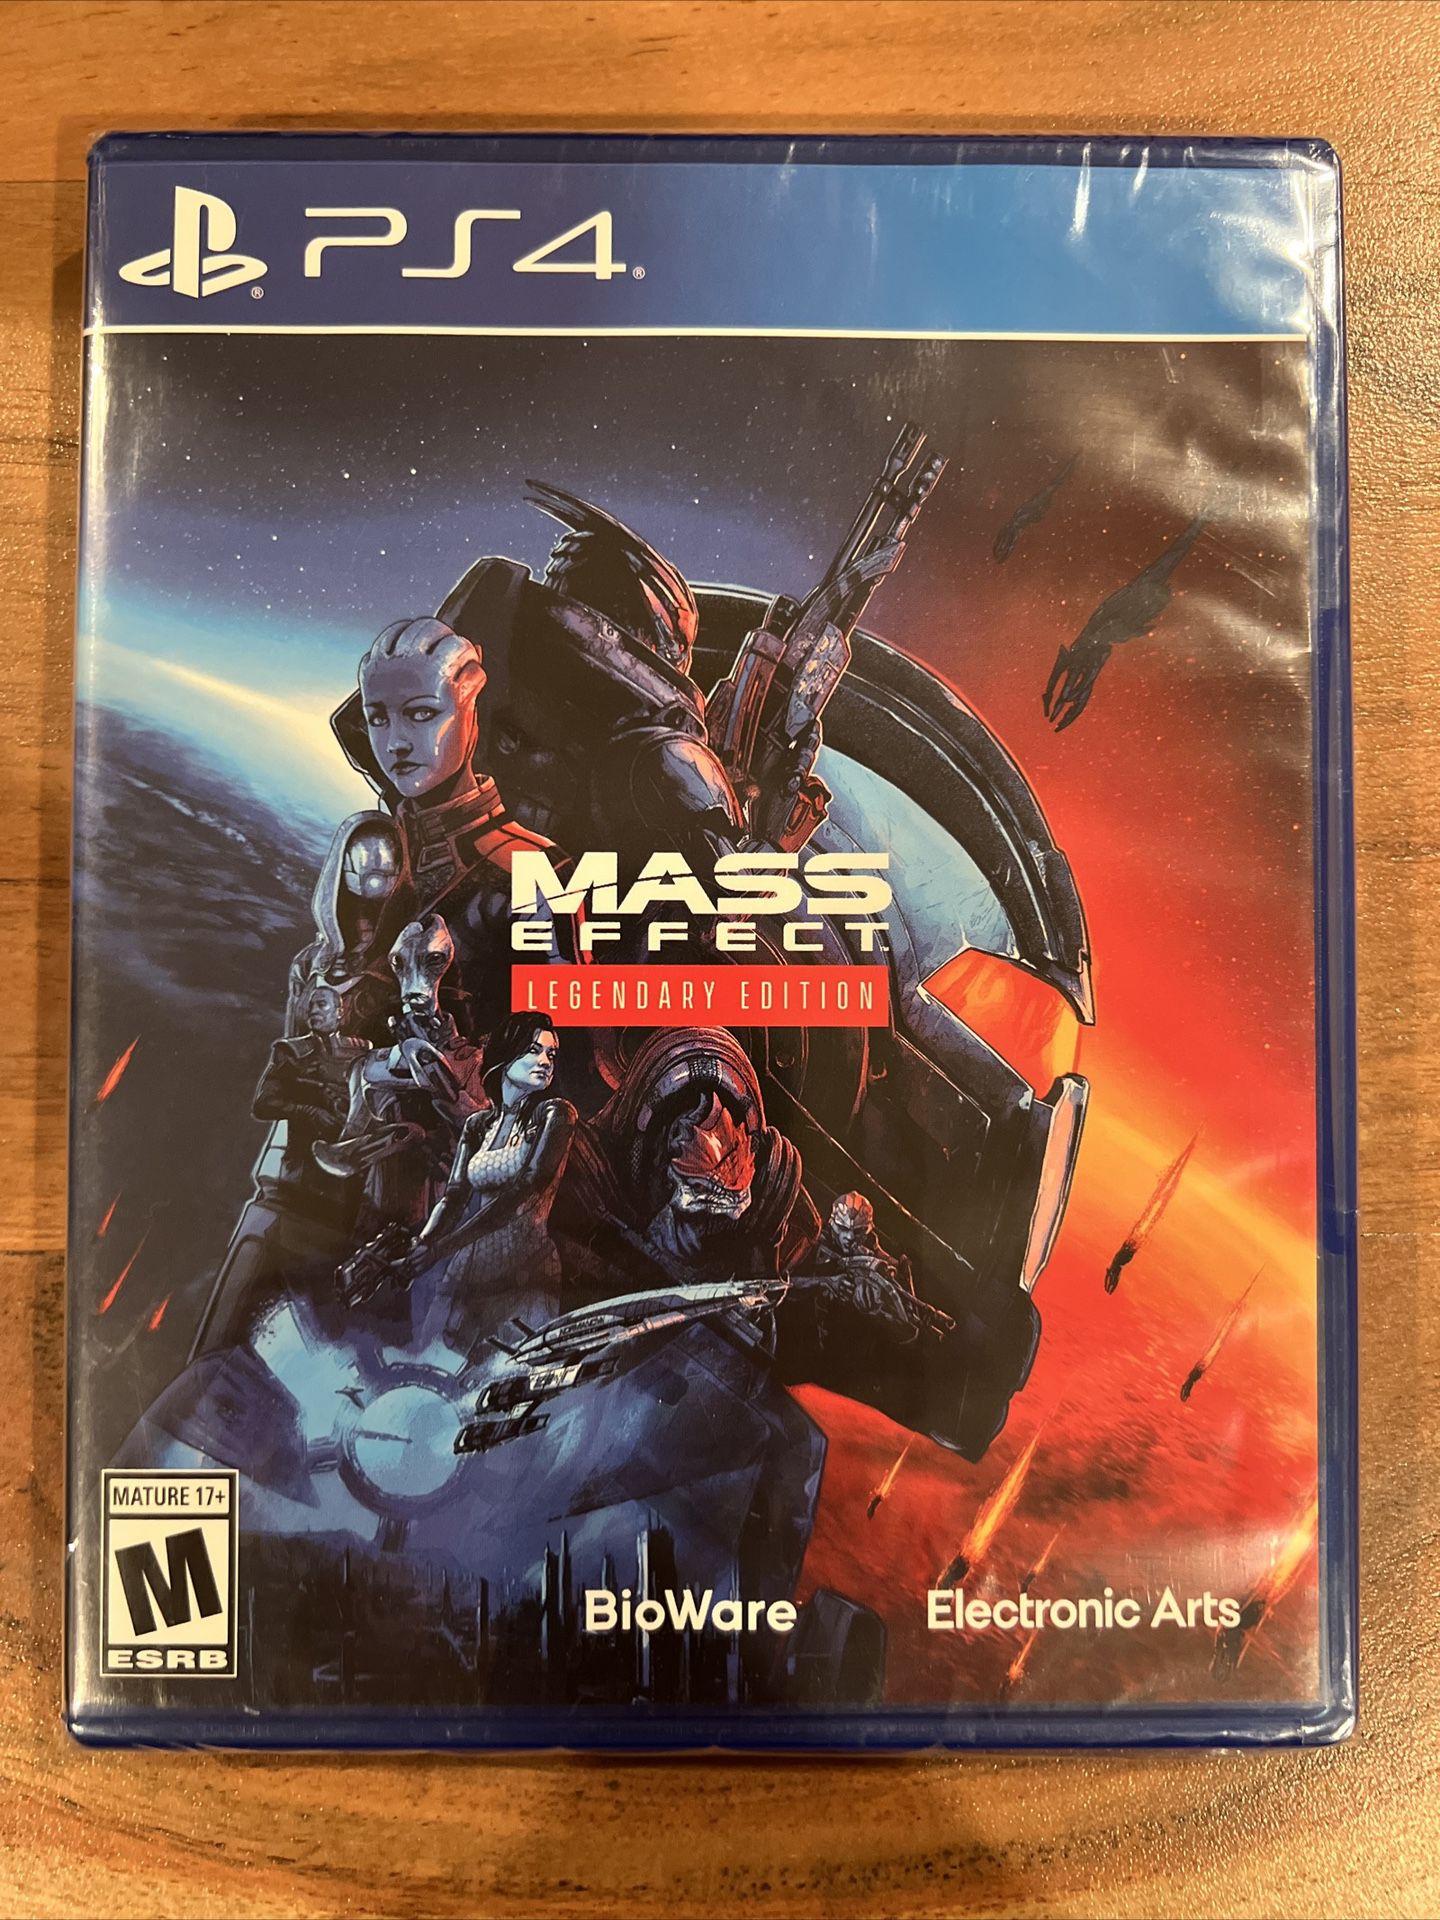 Mass Effect Legendary Edition - PS4 - Brand New 